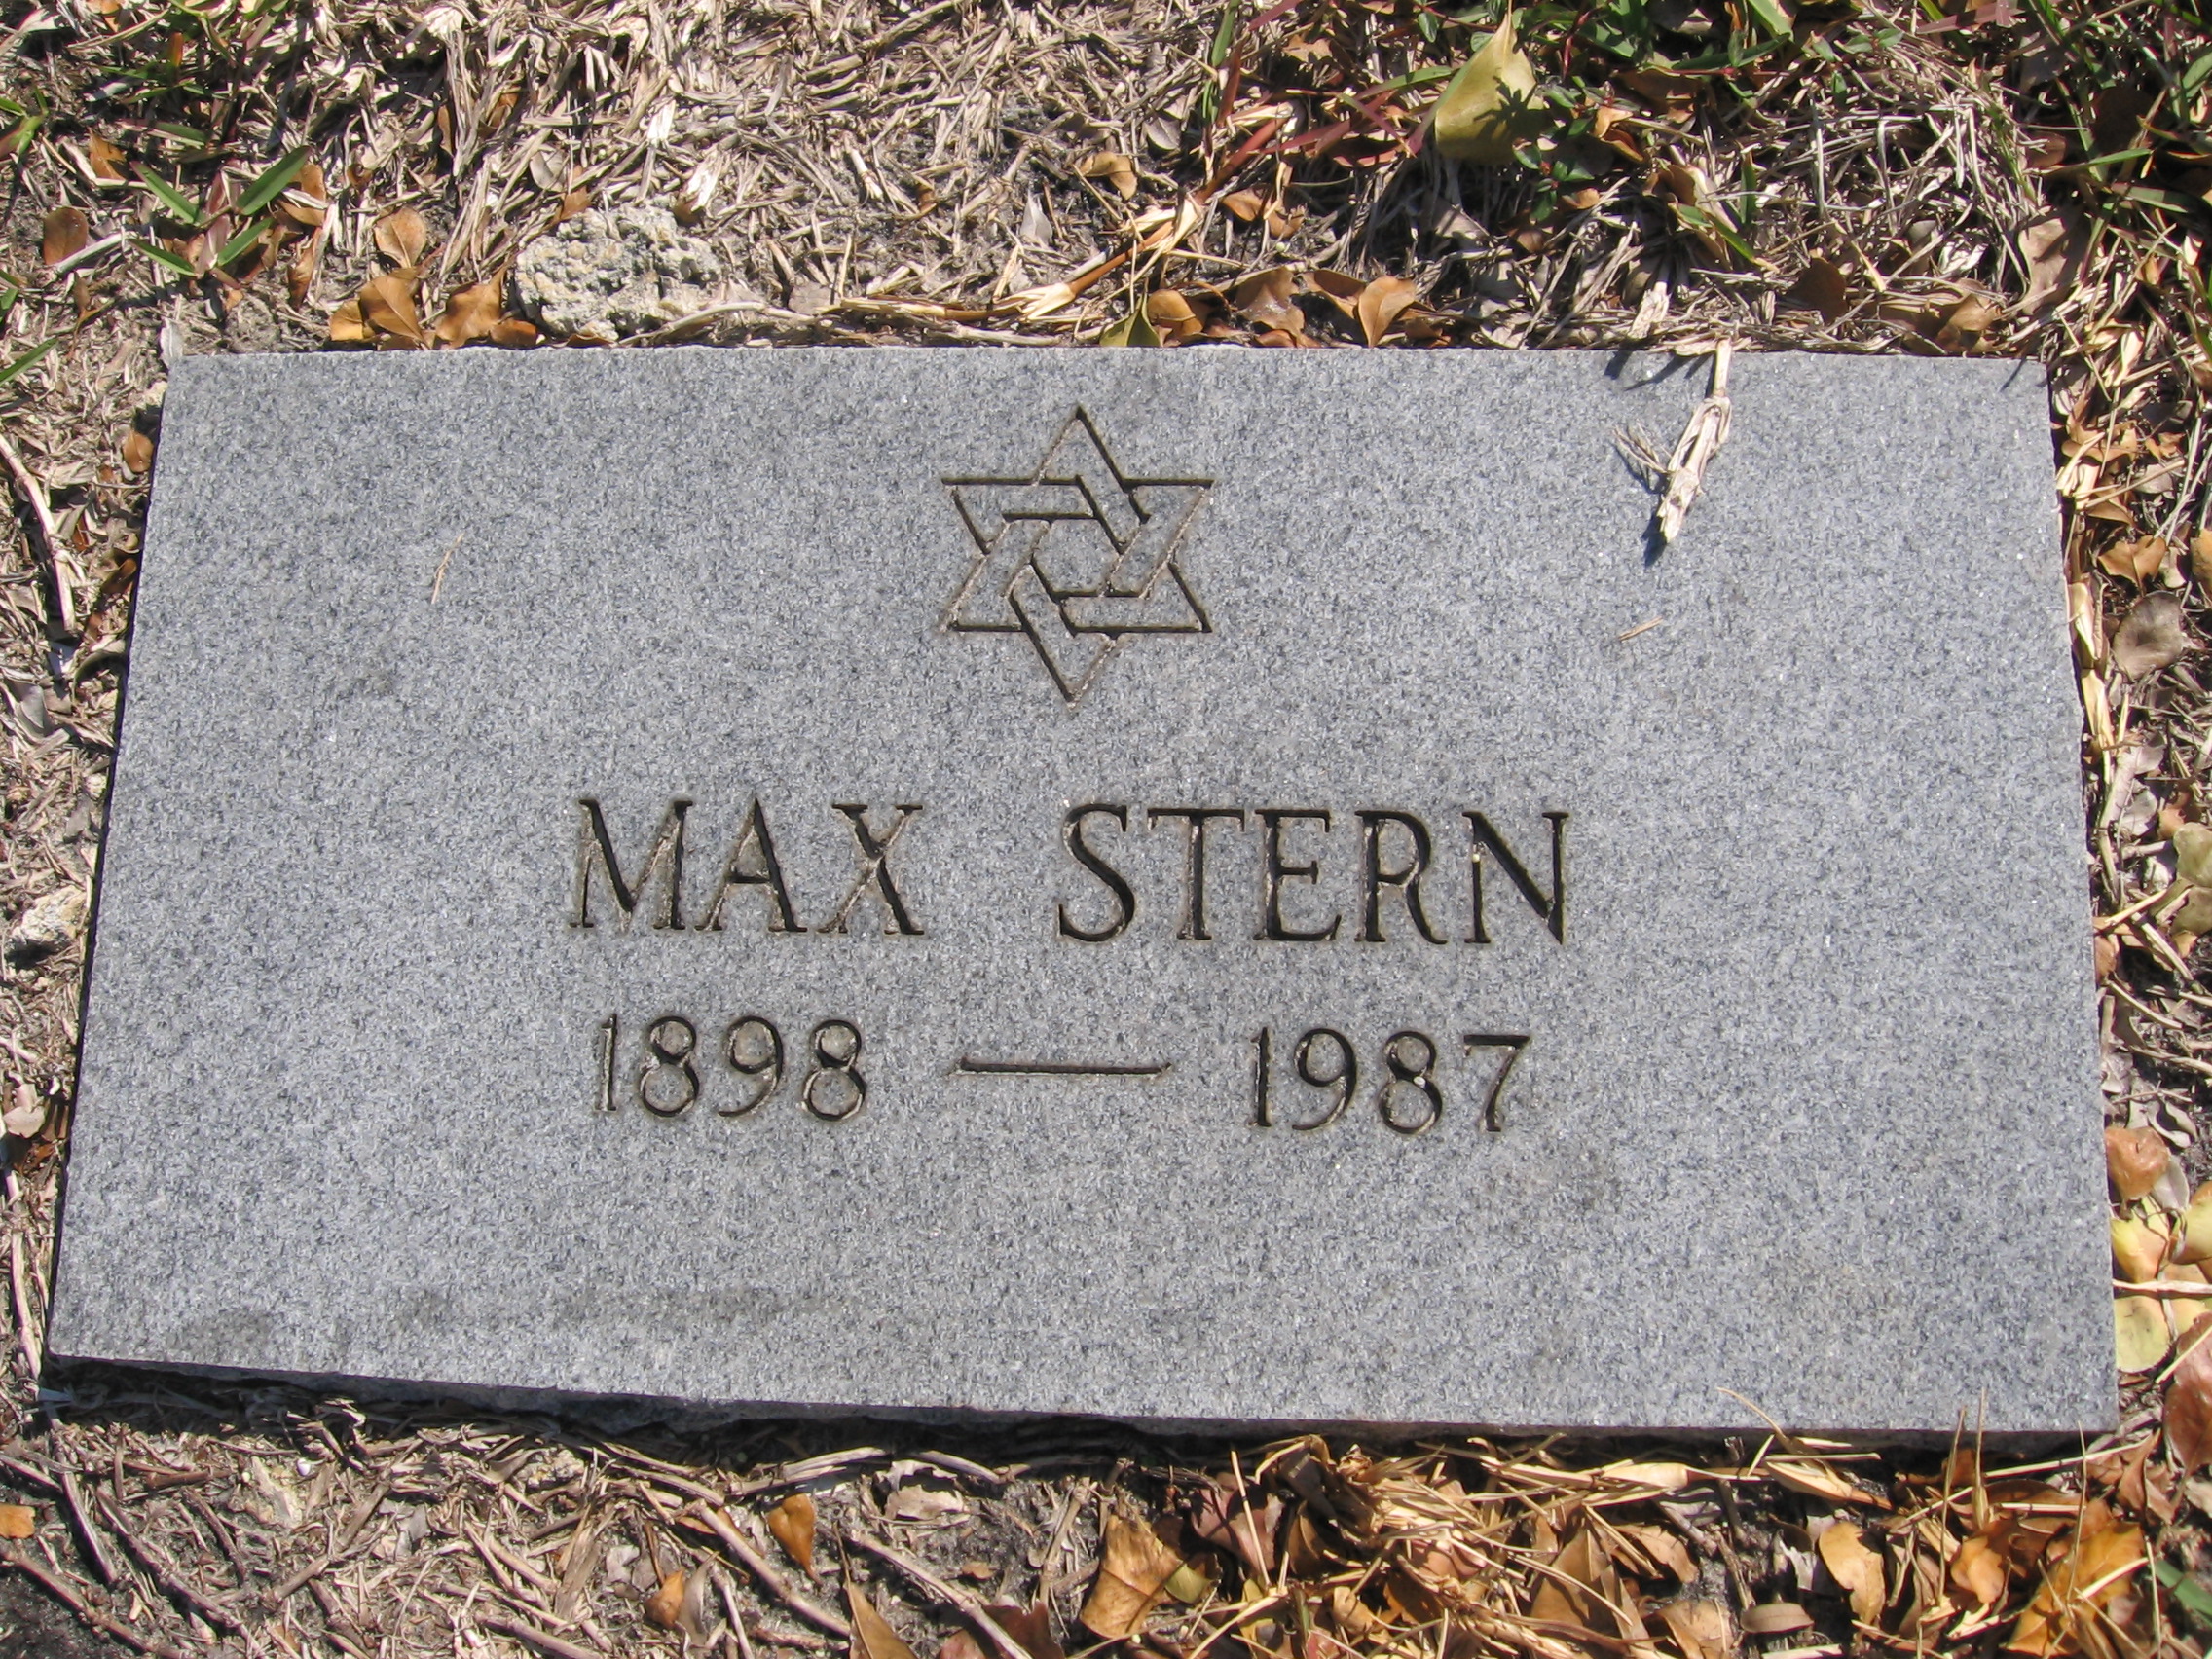 Max Stern